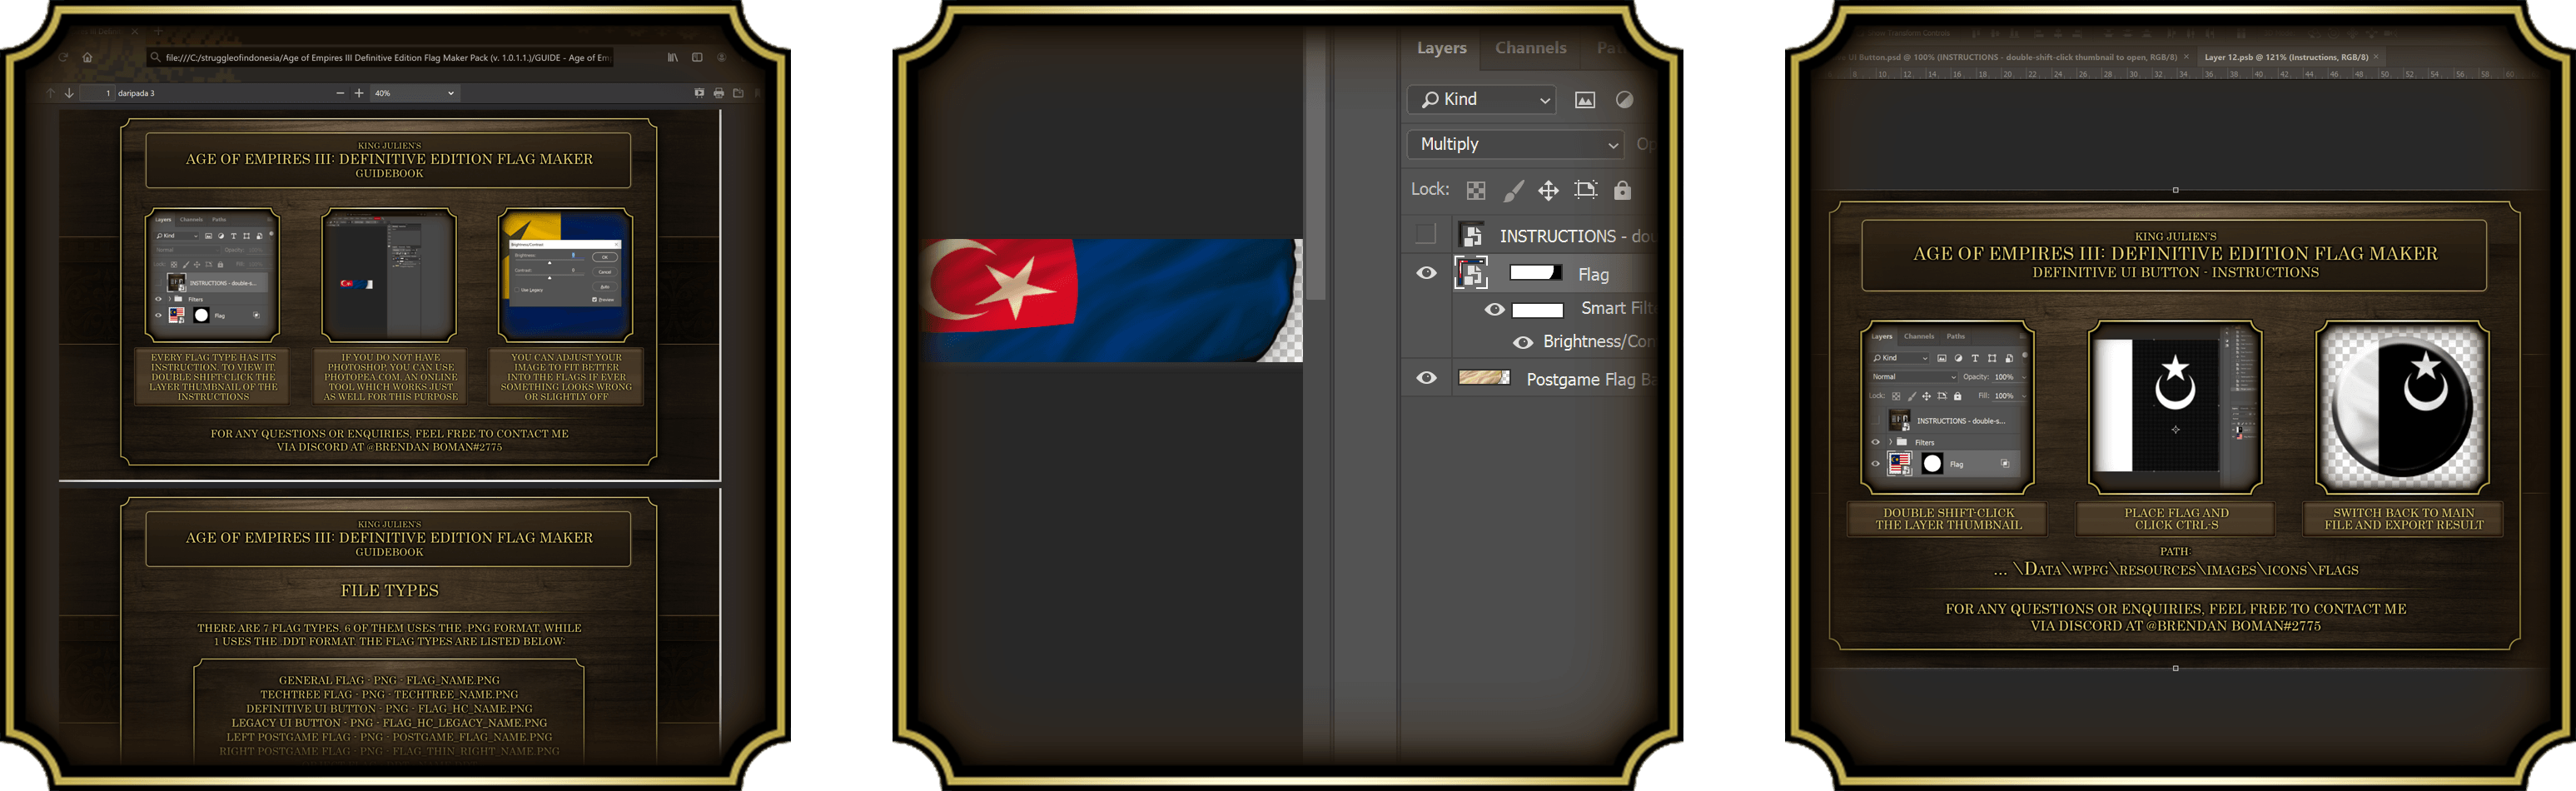 帝国时代3决定版旗帜修改模板包